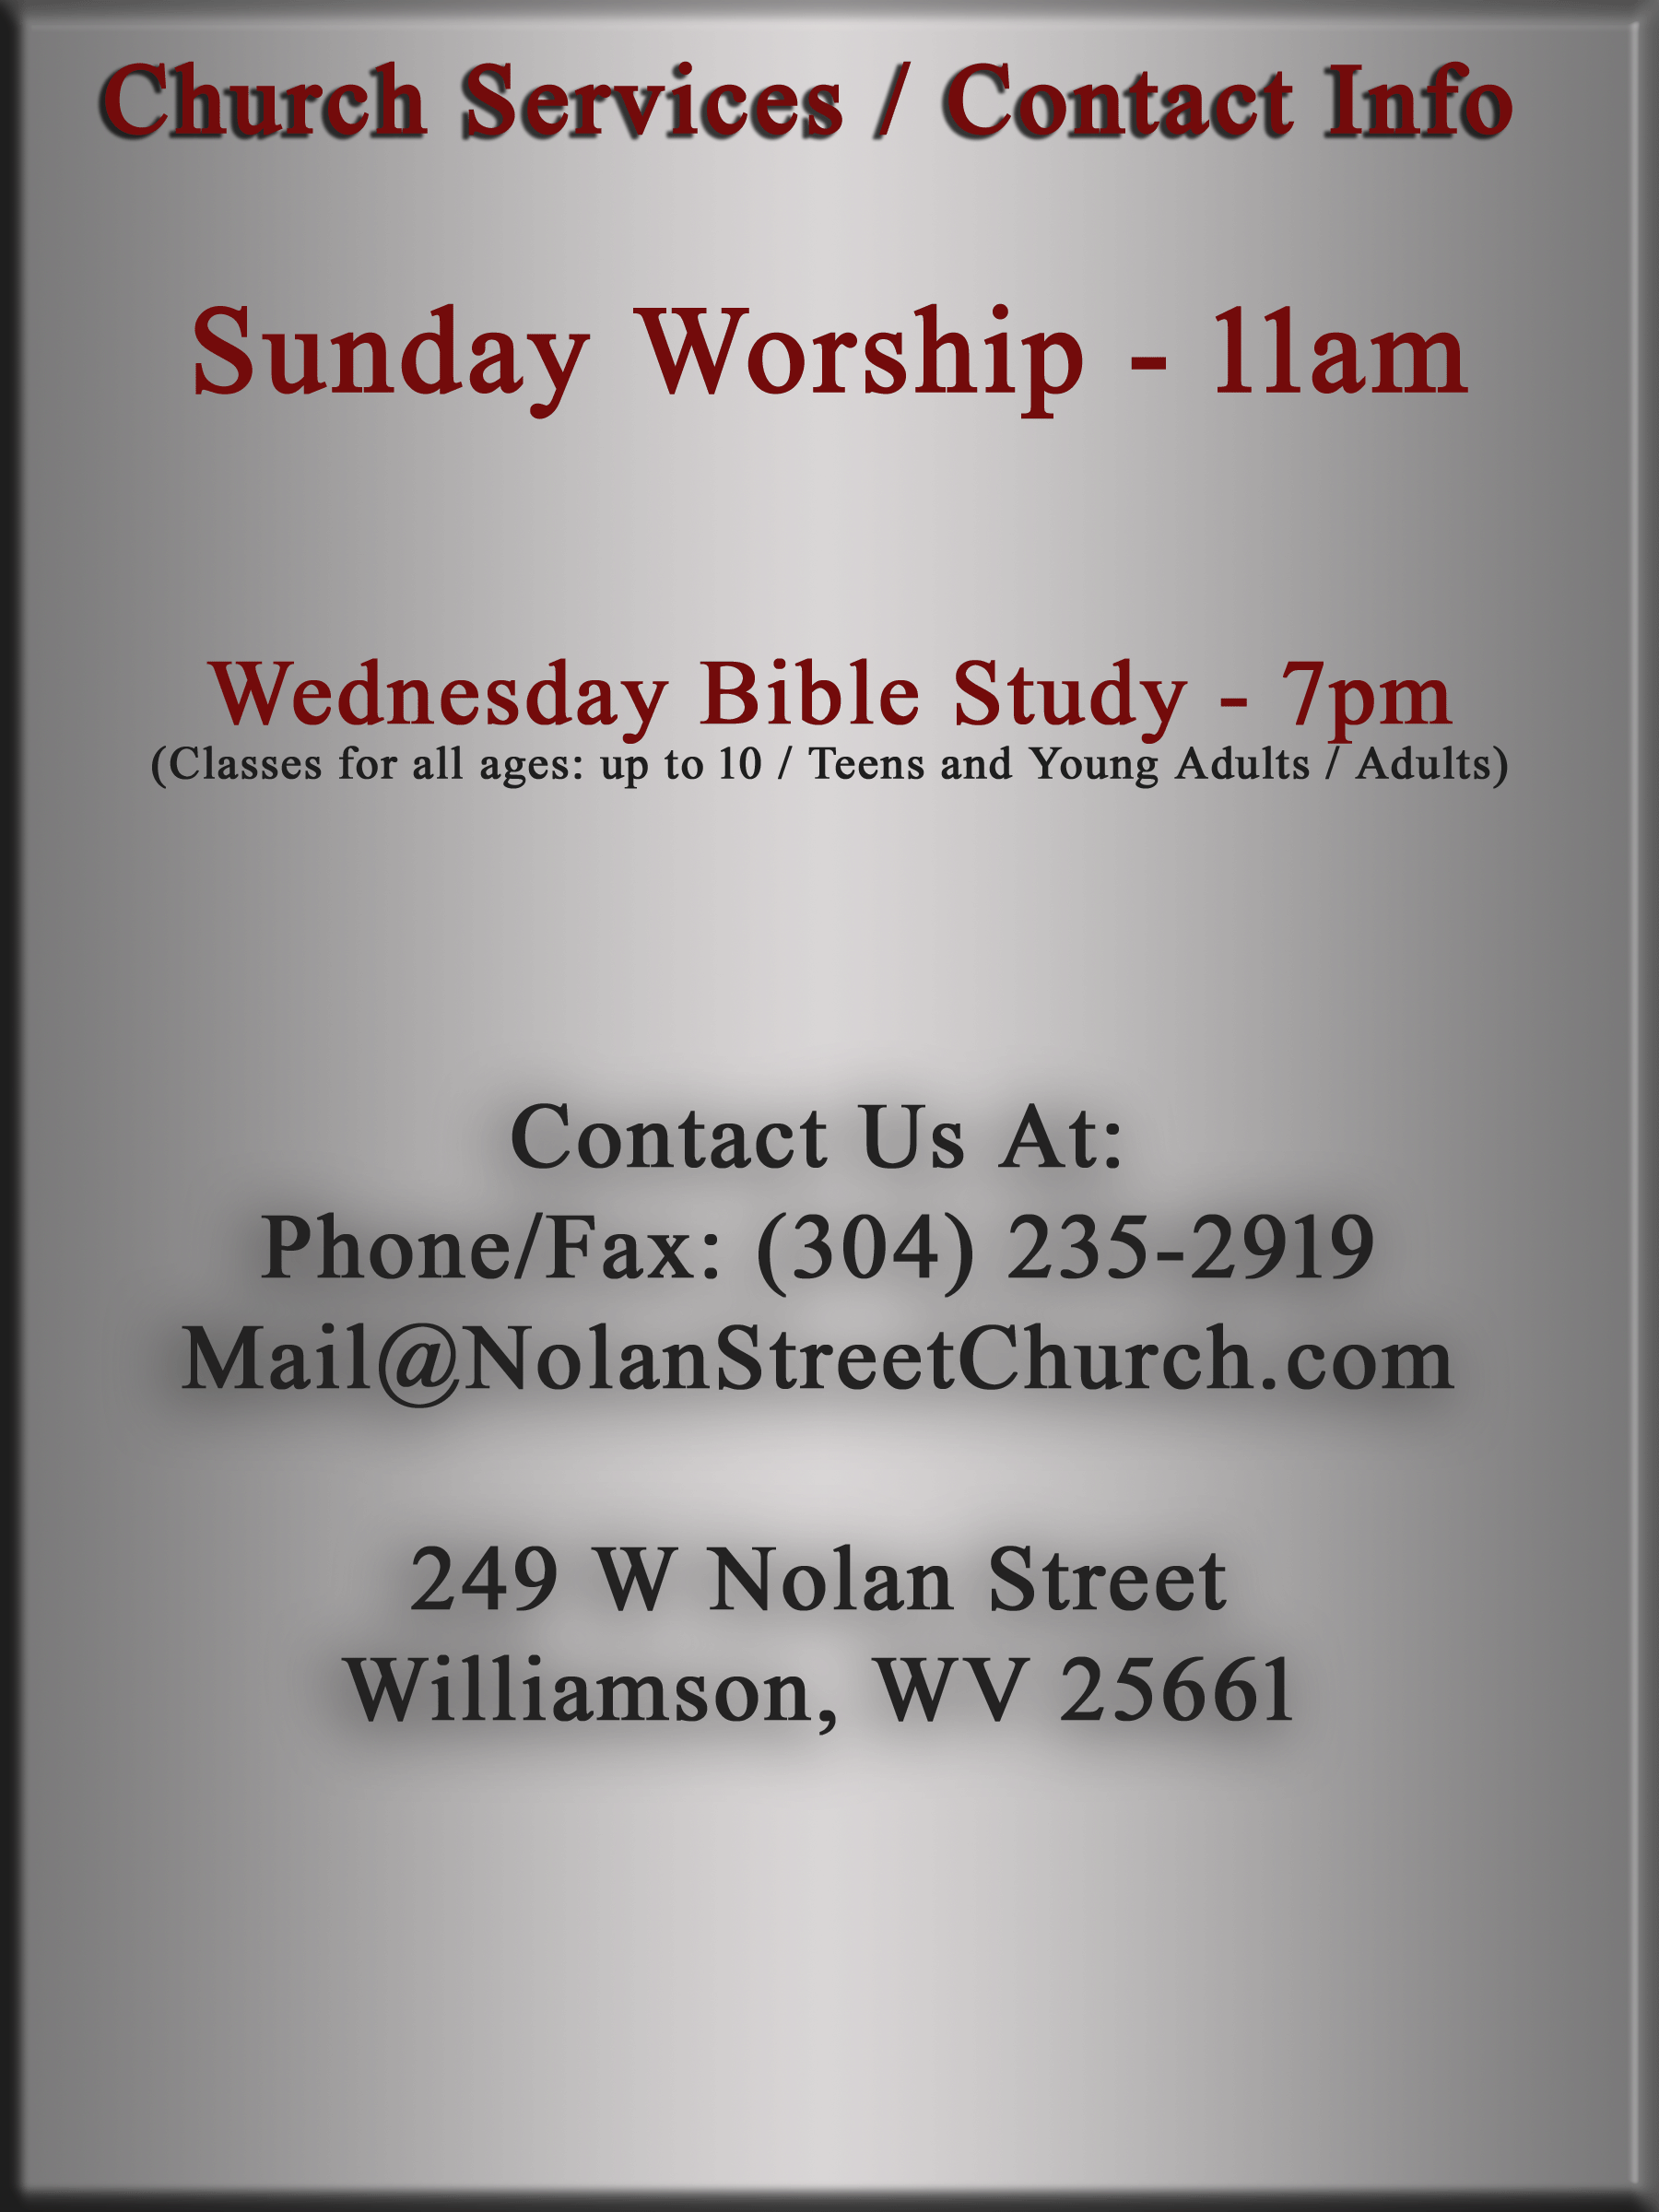 Nolan FWB Church - Contact information